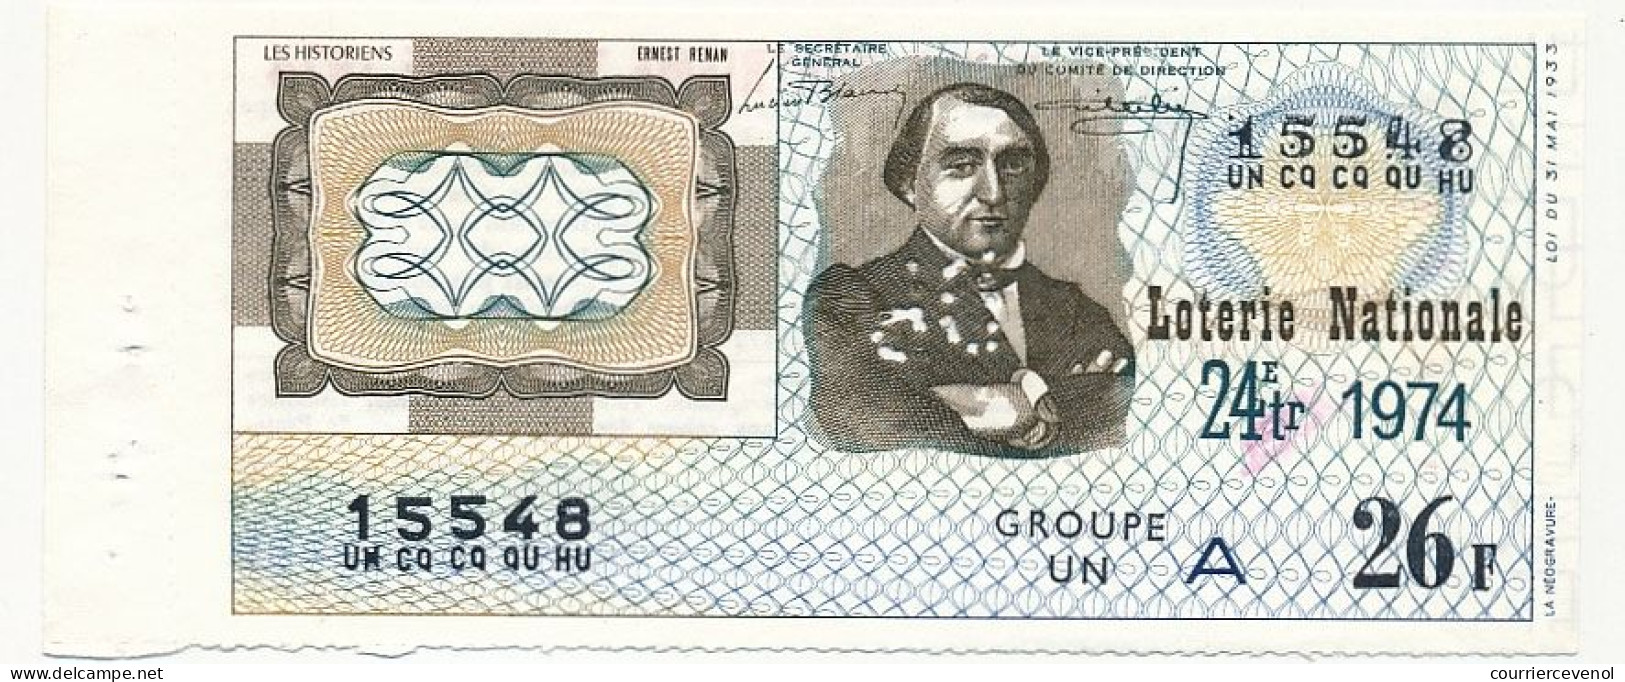 FRANCE - Loterie Nationale - Les Historiens - Ernest Renan - 24ème Tranche - 1974 - Perforation - Billets De Loterie